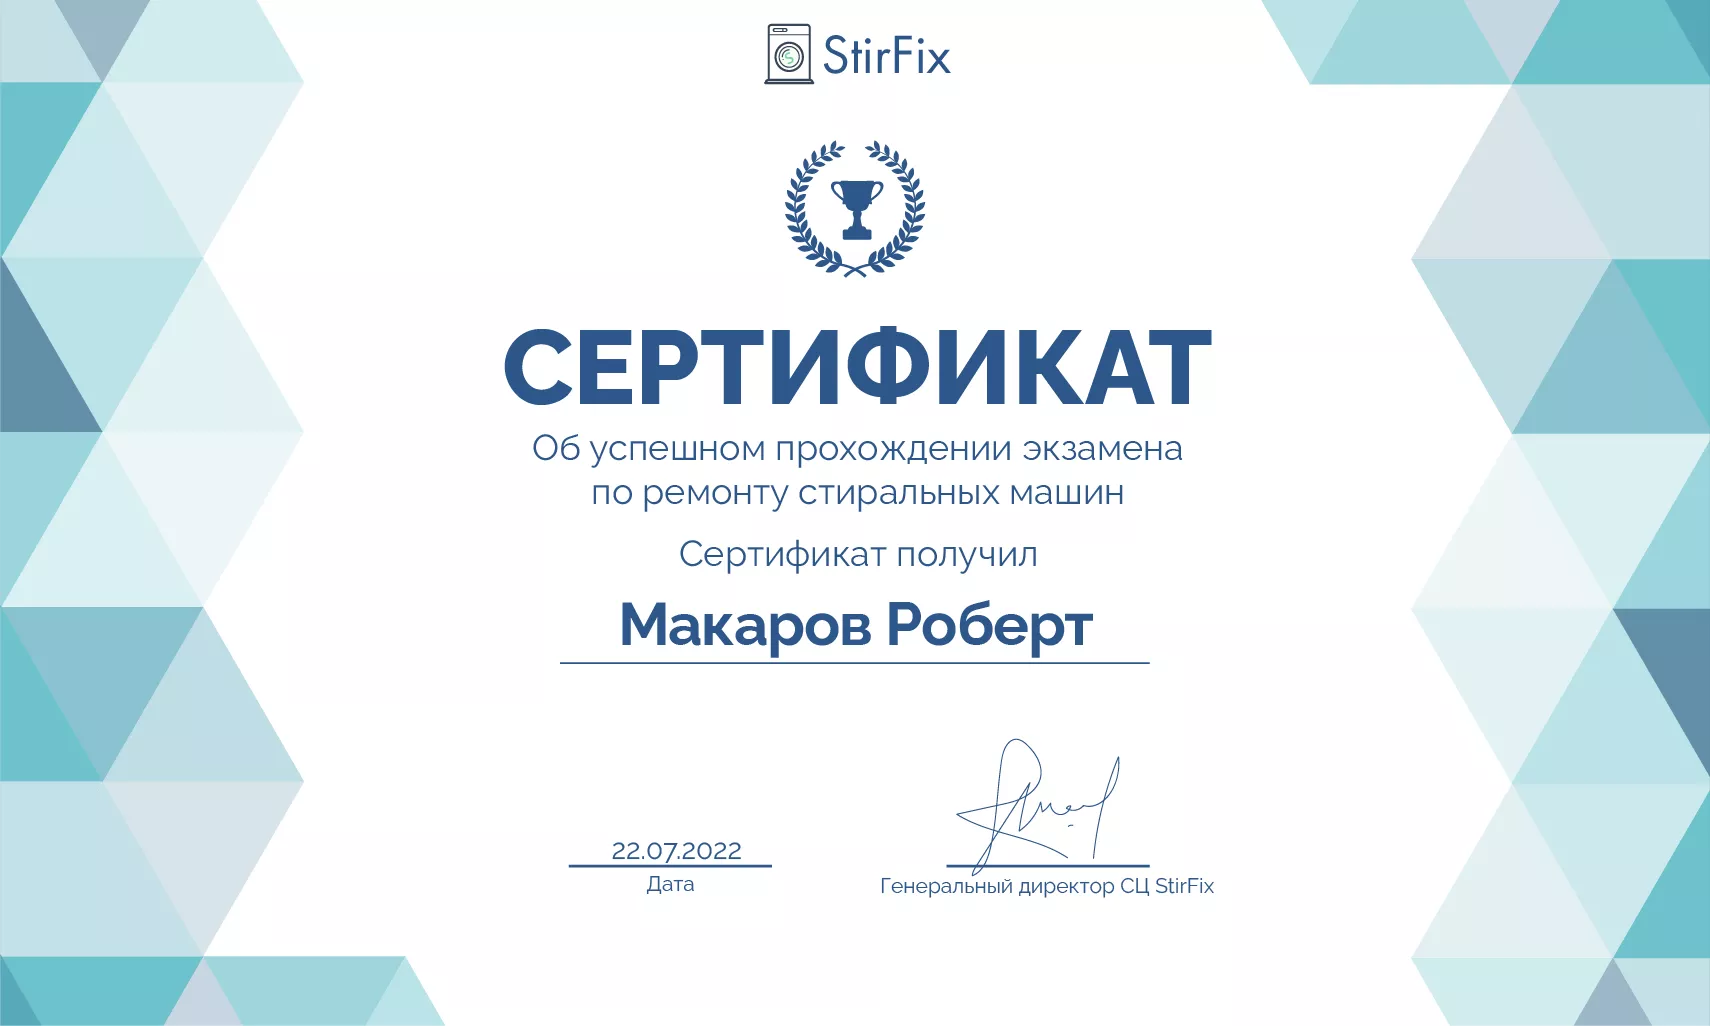 Макаров Роберт сертификат мастера по ремонту стиральных машин